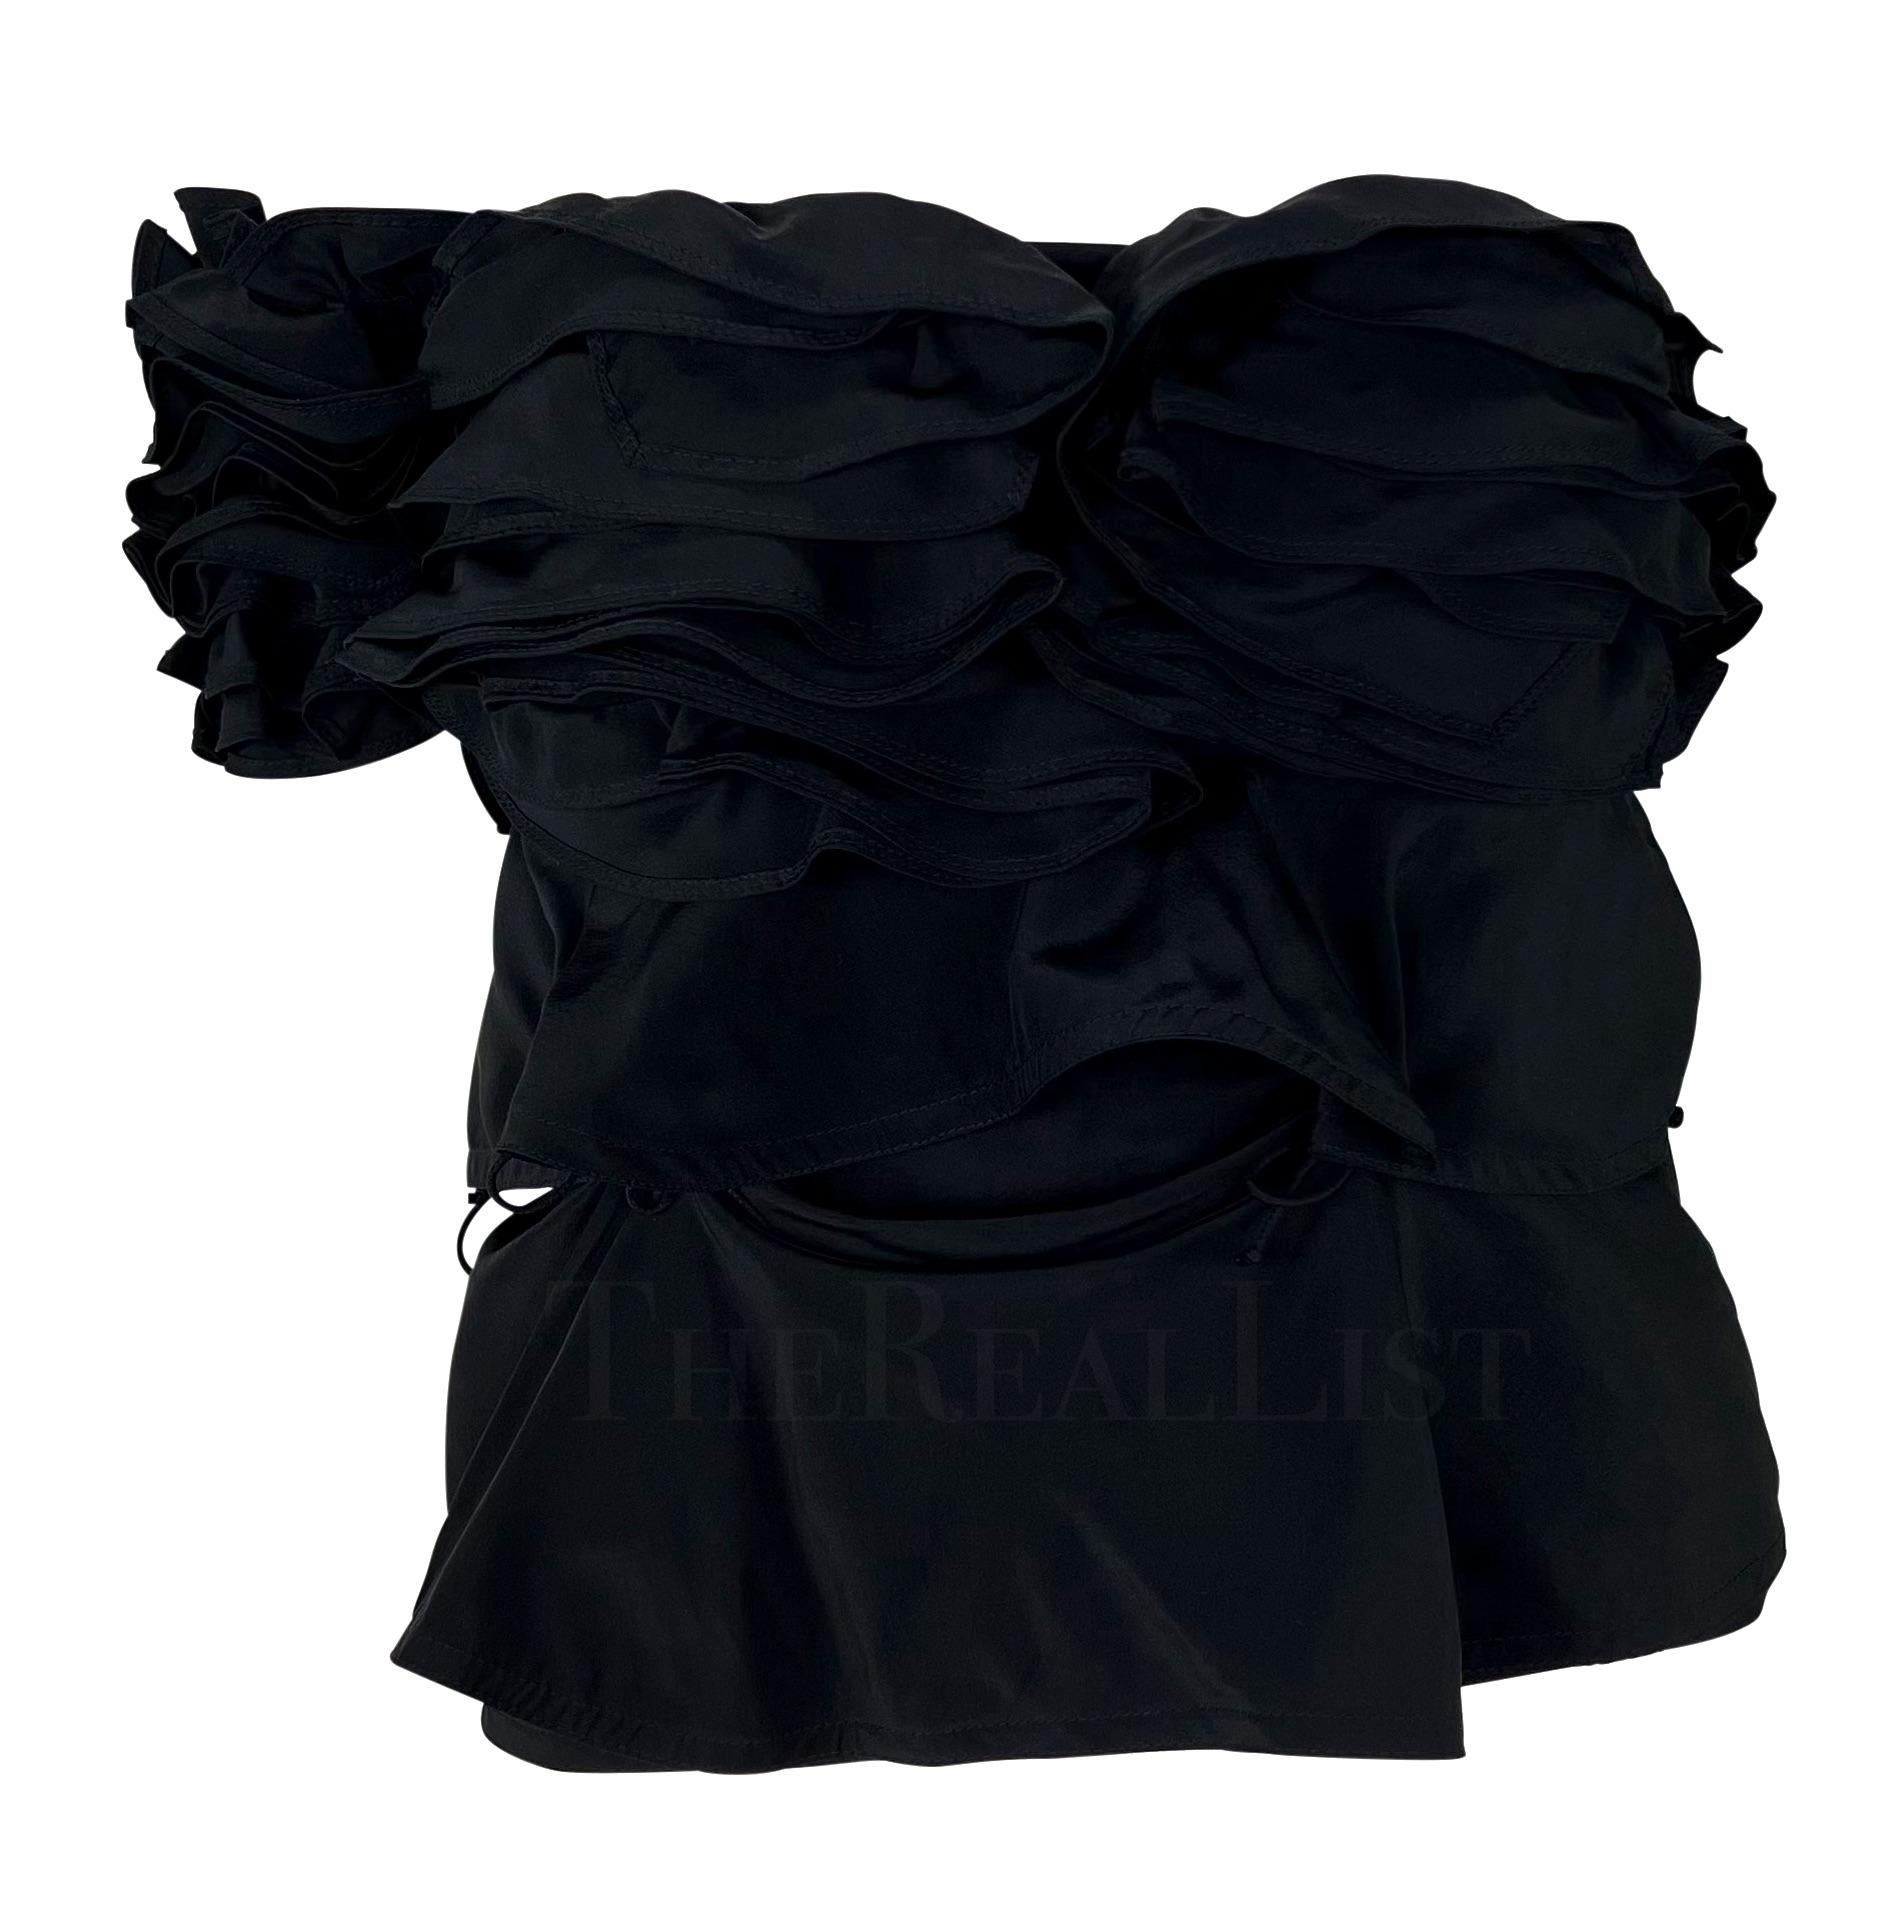 Ich präsentiere ein fabelhaftes ärmelloses Yves Saint Laurent Rive Gauche Oberteil aus schwarzer Seide, entworfen von Tom Ford. Dieses schicke schwarze Oberteil aus der Herbst/Winter-Kollektion 2003 besteht aus mehreren Lagen leichter Seide, die zum